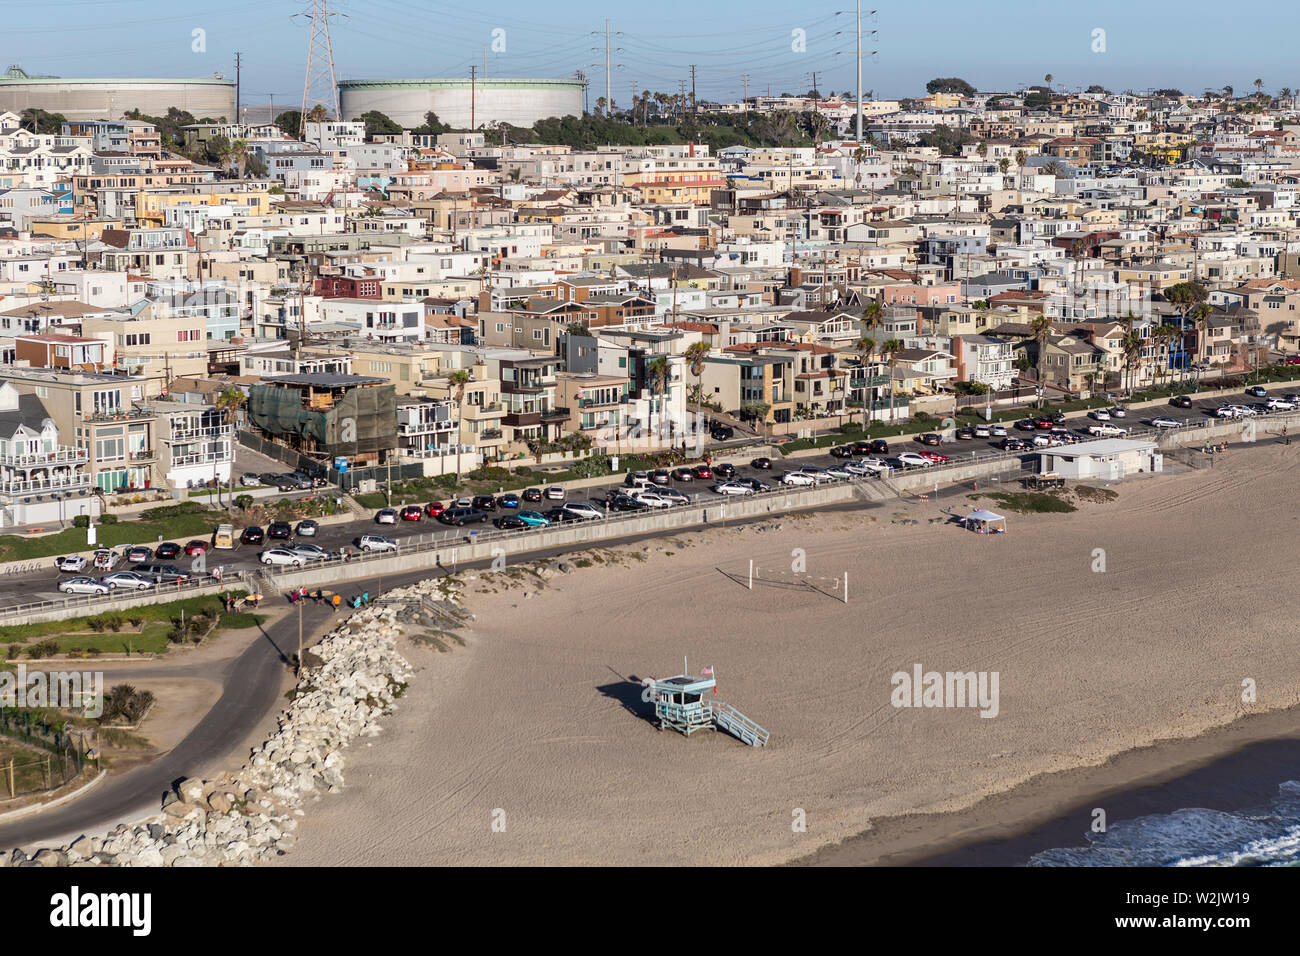 Pomeriggio Vista aerea di spiagge di sabbia, ad alta densità abitativa e serbatoi di accumulo carburante in Manhattan Beach, vicino a Los Angeles, California. Foto Stock